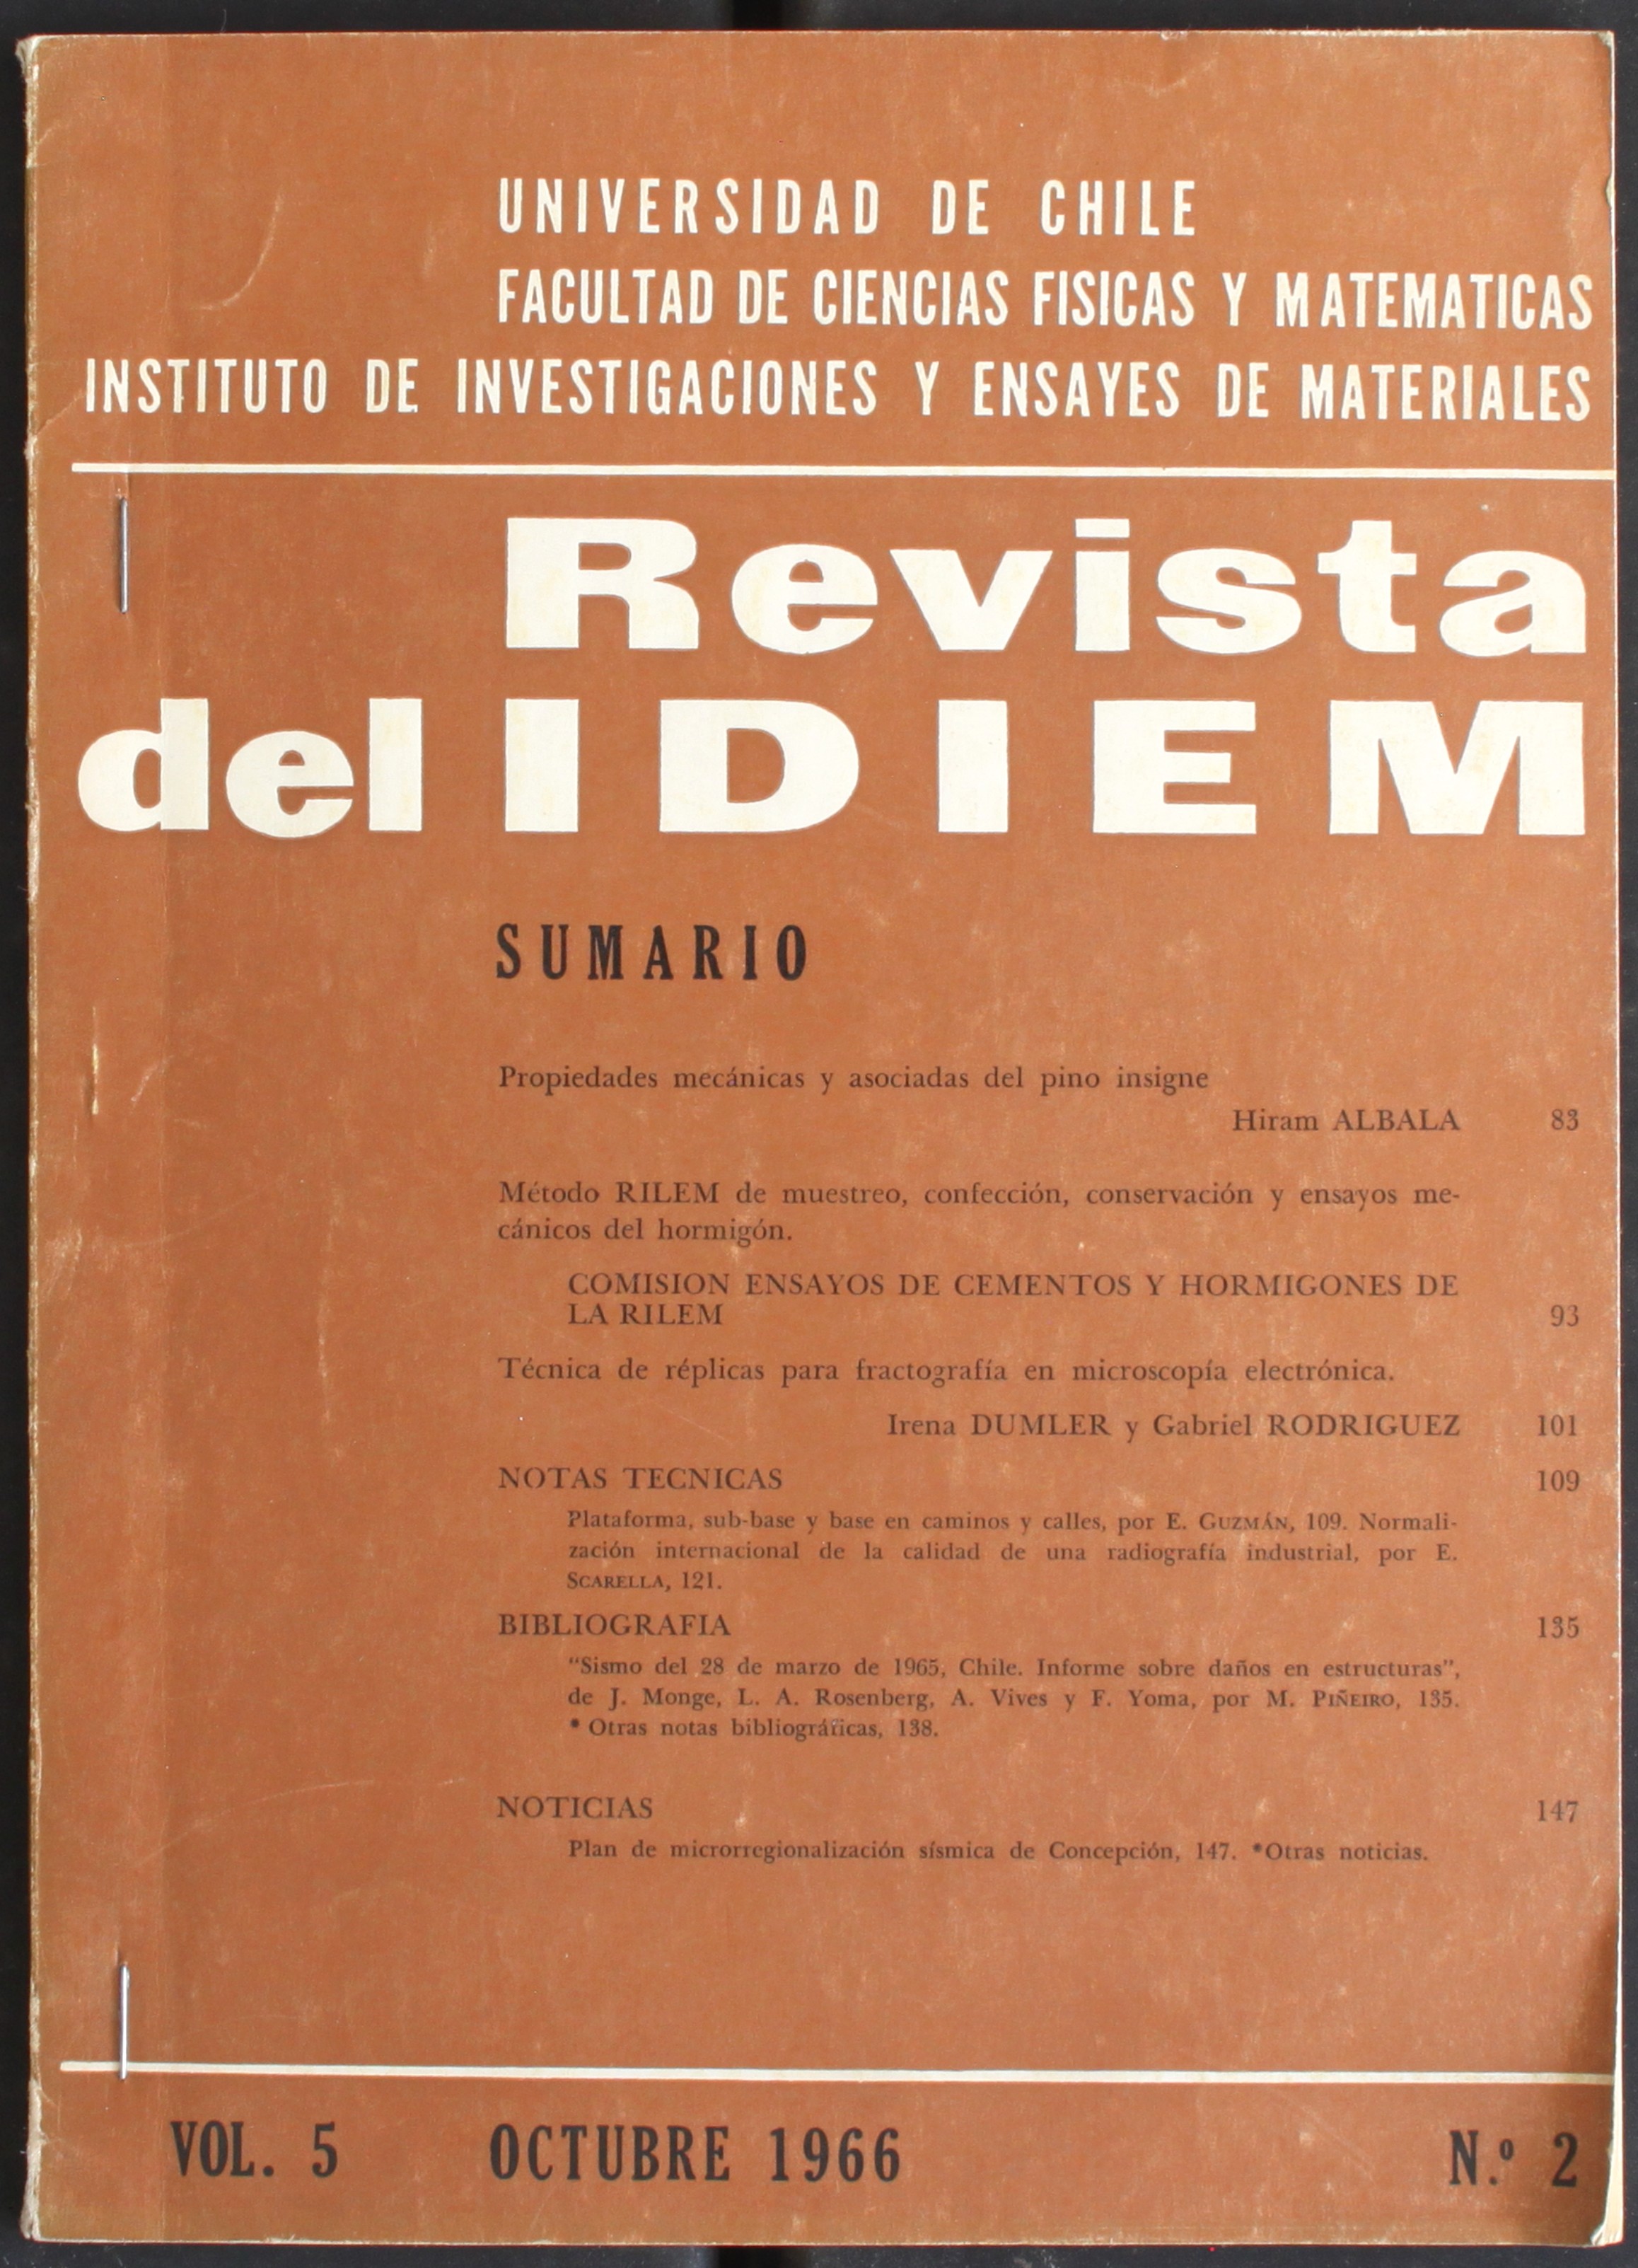 											Ver Vol. 3 Núm. 3 (1964): Año 1964, noviembre
										